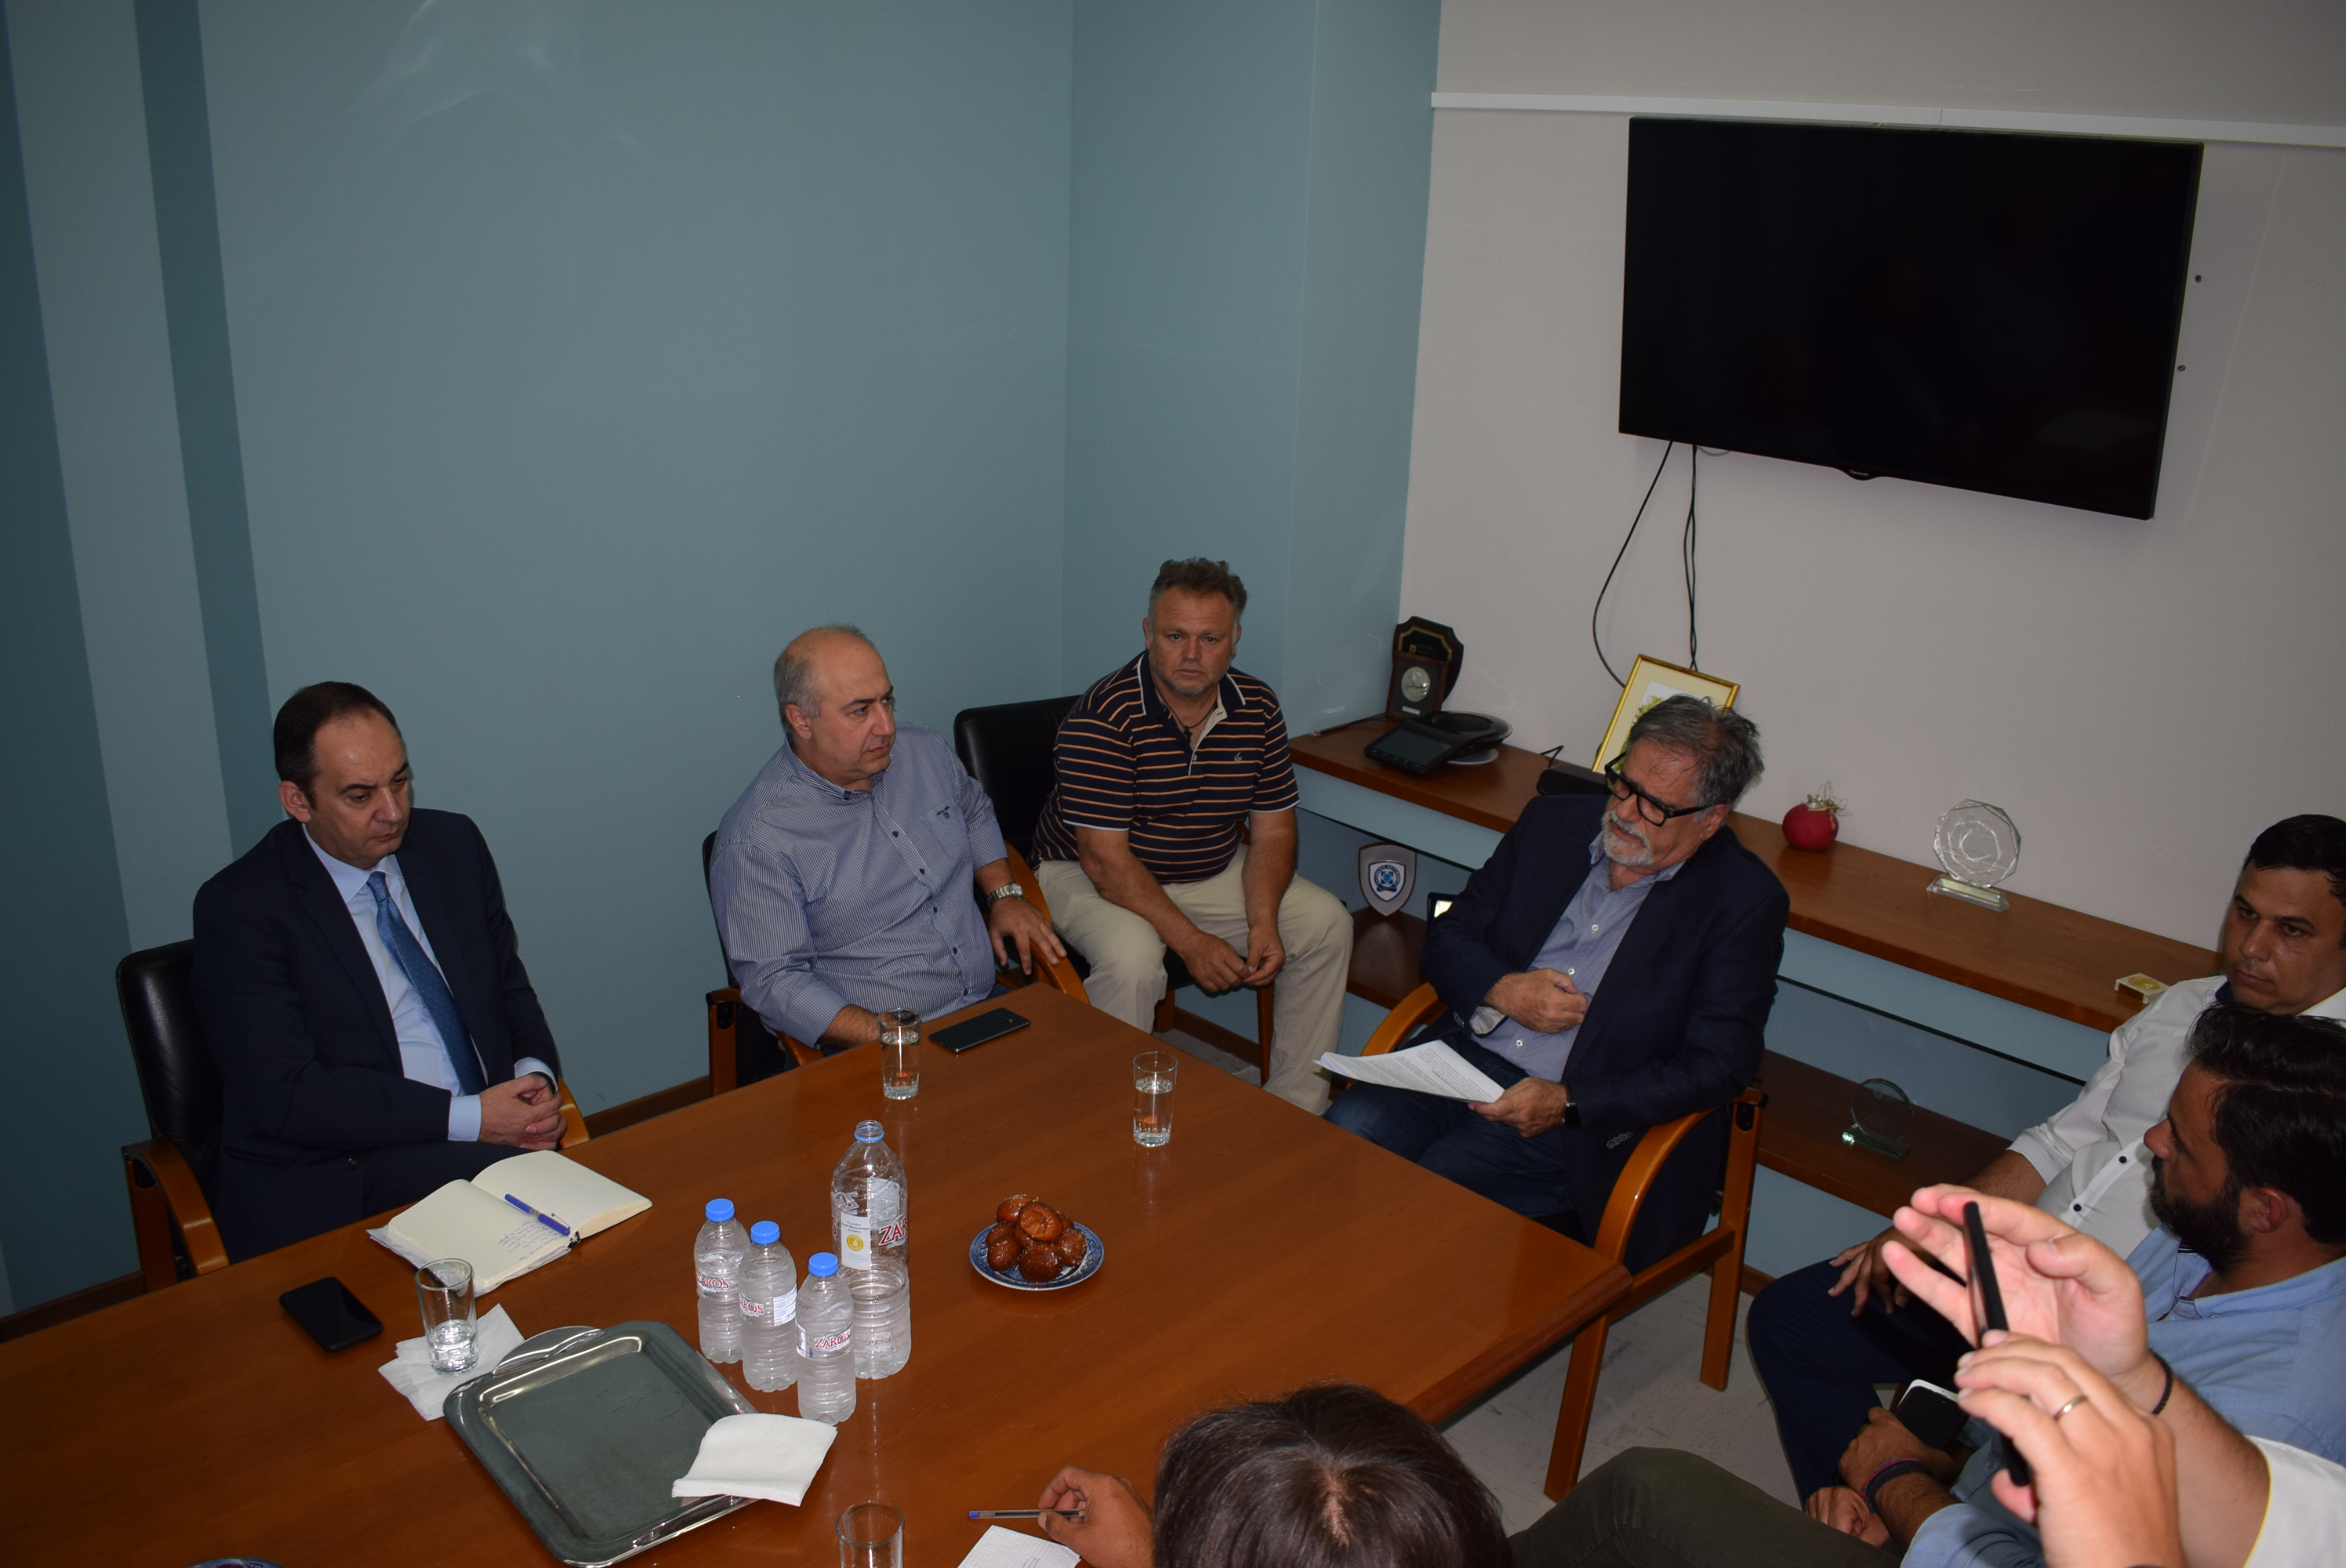 Σειρά θεμάτων στο τραπέζι στη συνάντηση του Γ. Πλακιωτάκη με τον δήμο Αγ. Νικολάου